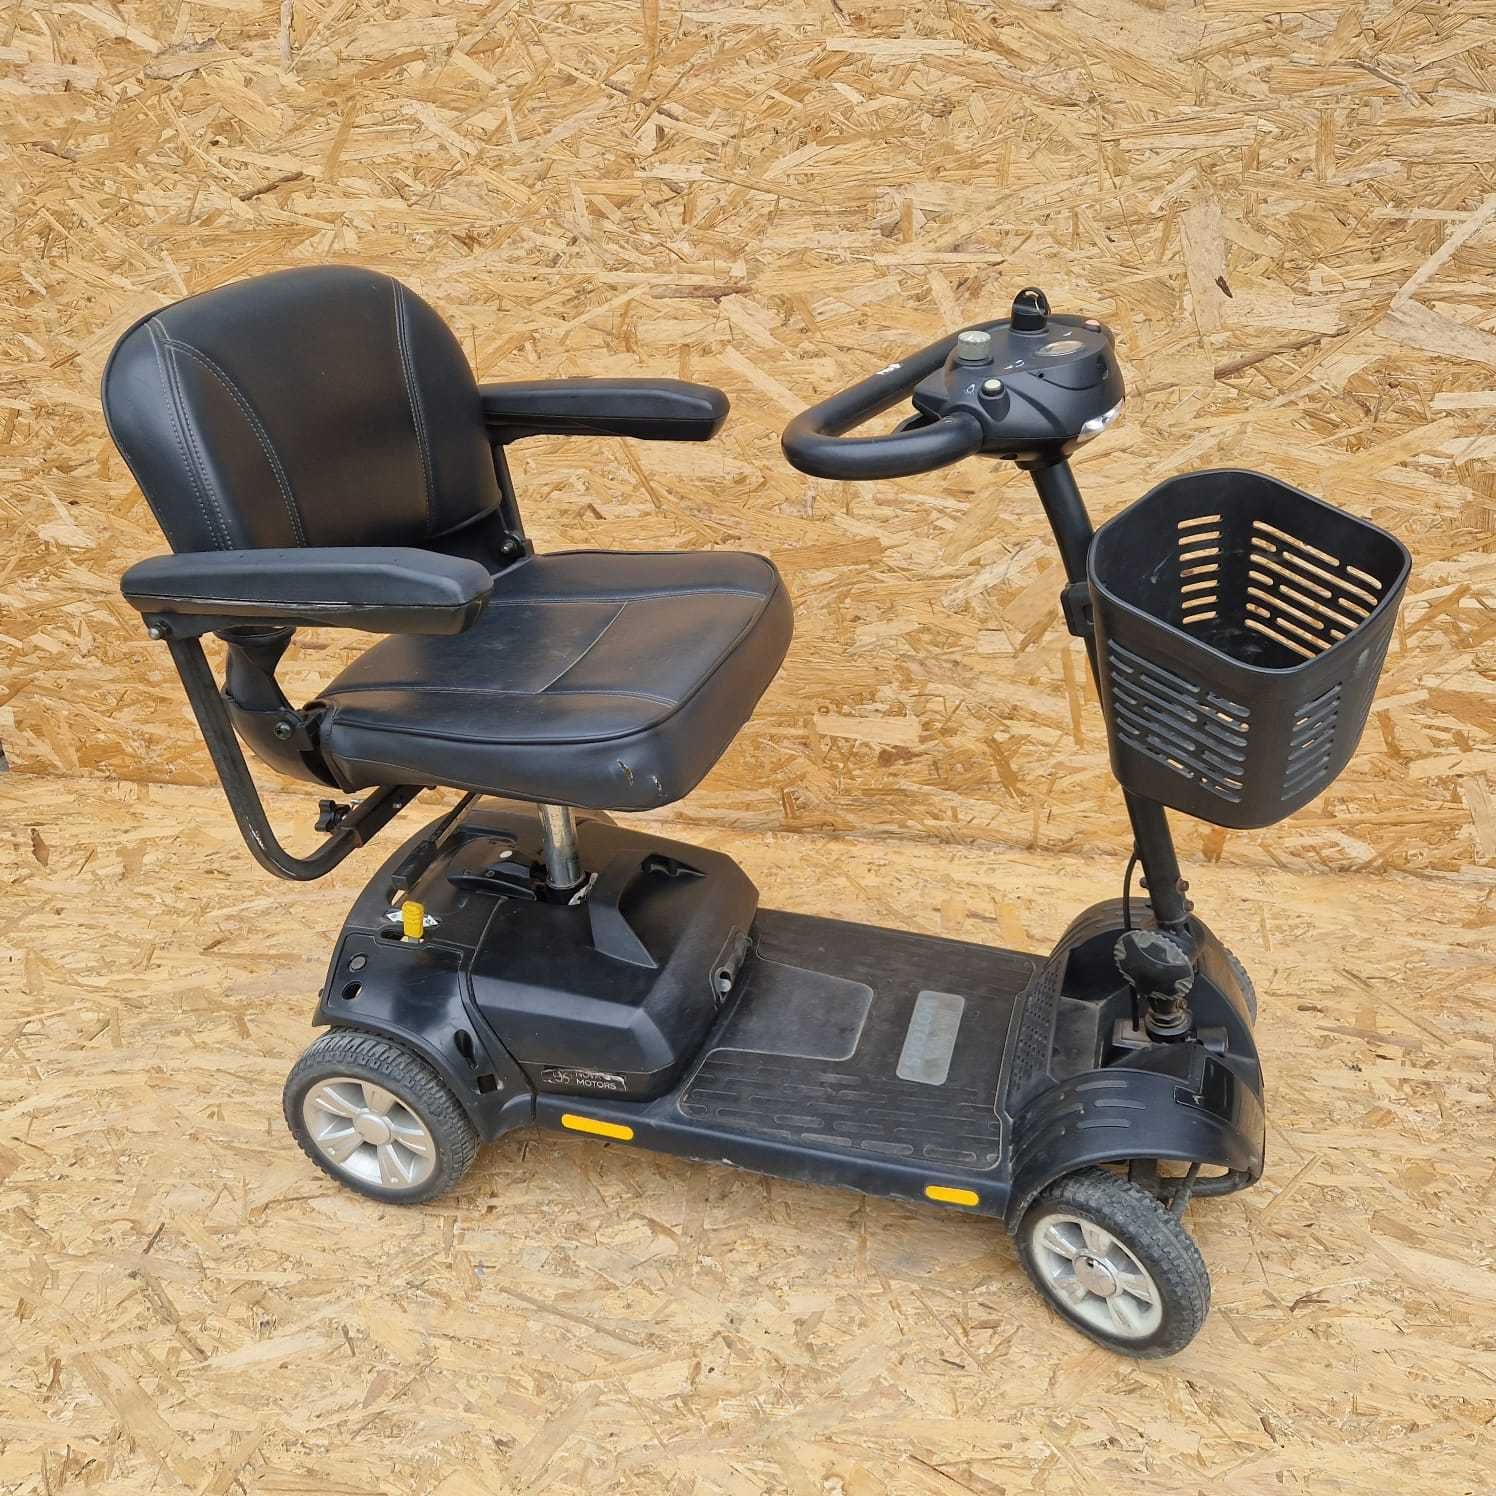 skuter wózek inwalidzki elektryczny składany do AUTA + KOSZYK nowe aku